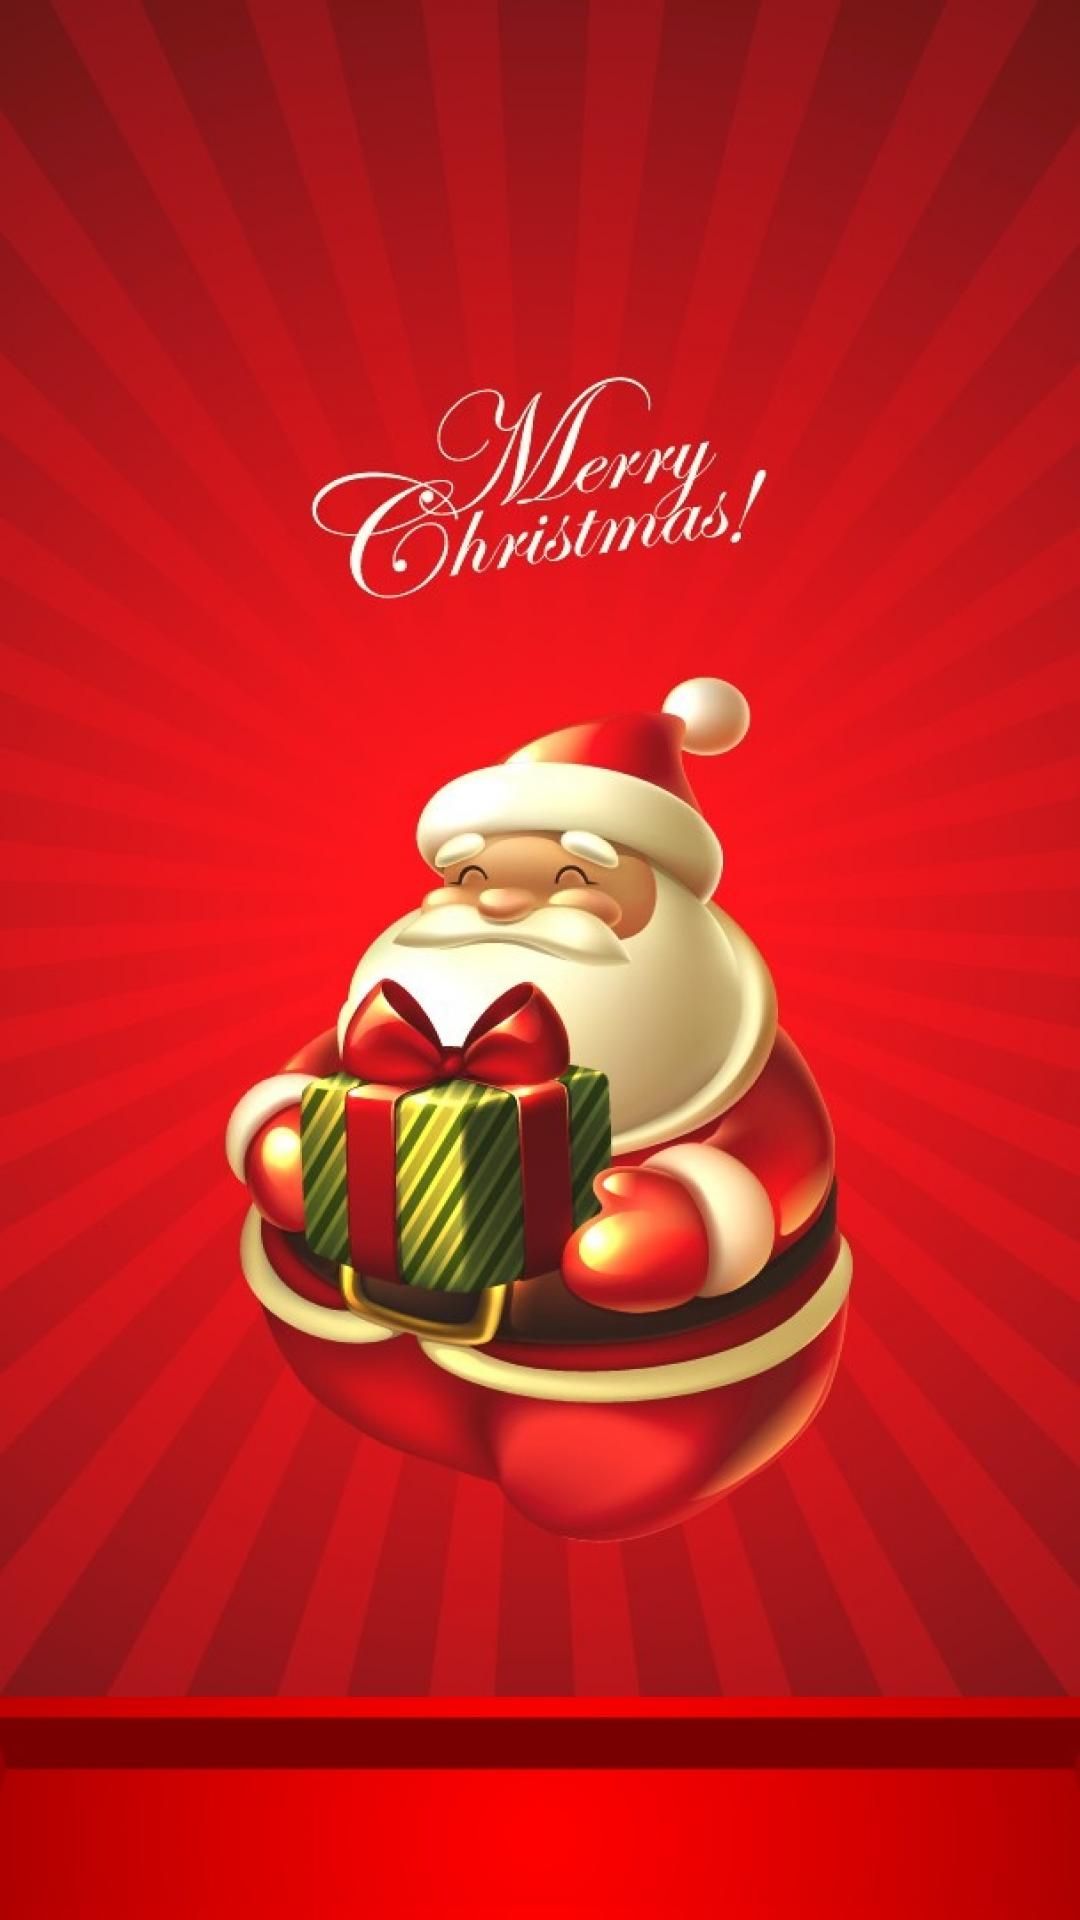 Cute Christmas Santa Claus iPhone 6 Wallpaper Download iPhone